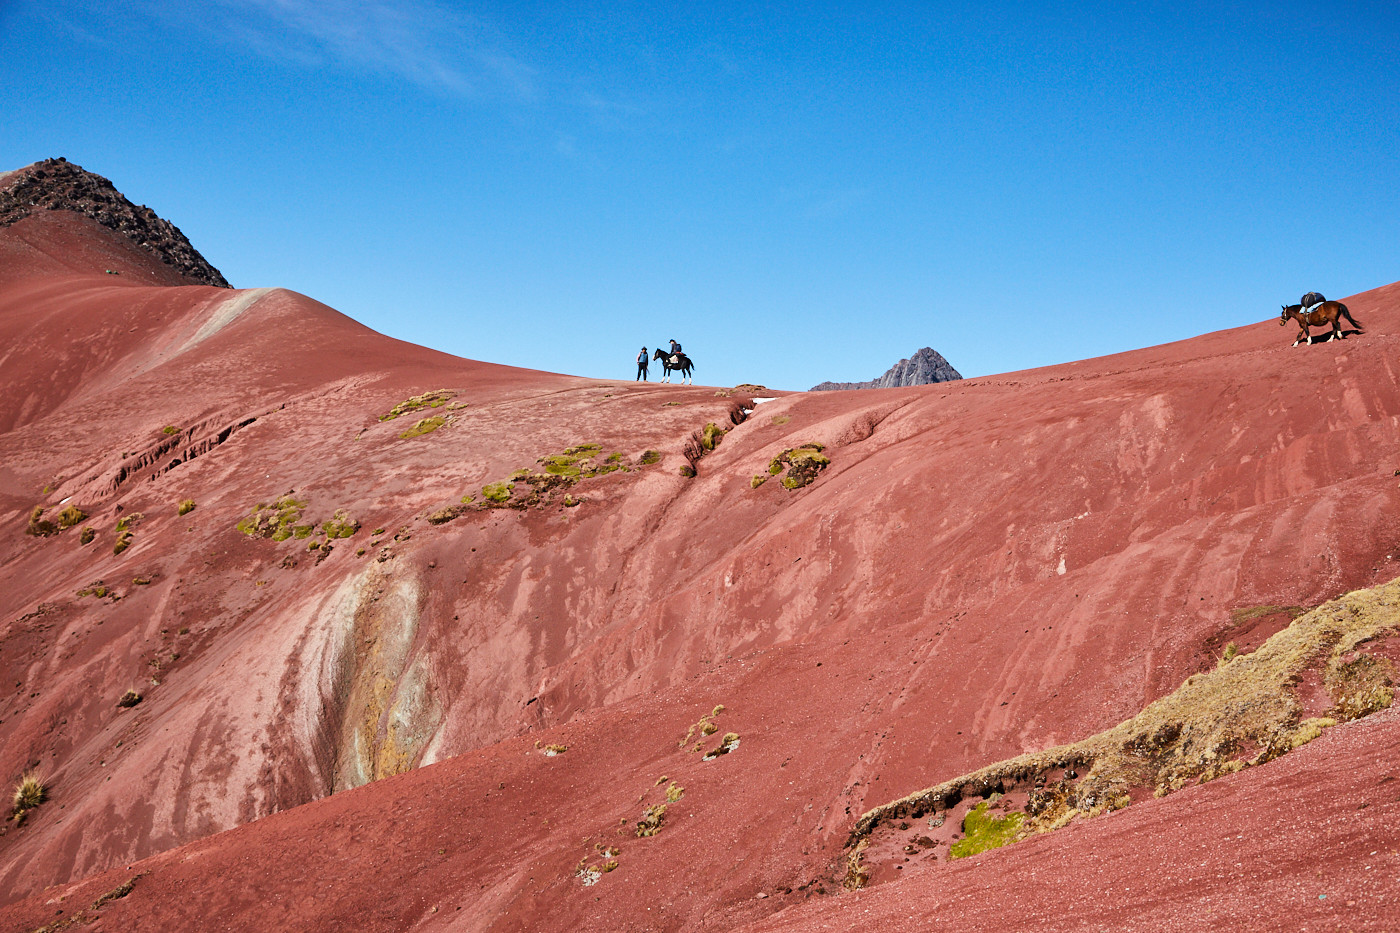 Christina am Bergkamm des Red Valley auf ihrem Pferd - ein unglaublich toller Anblick